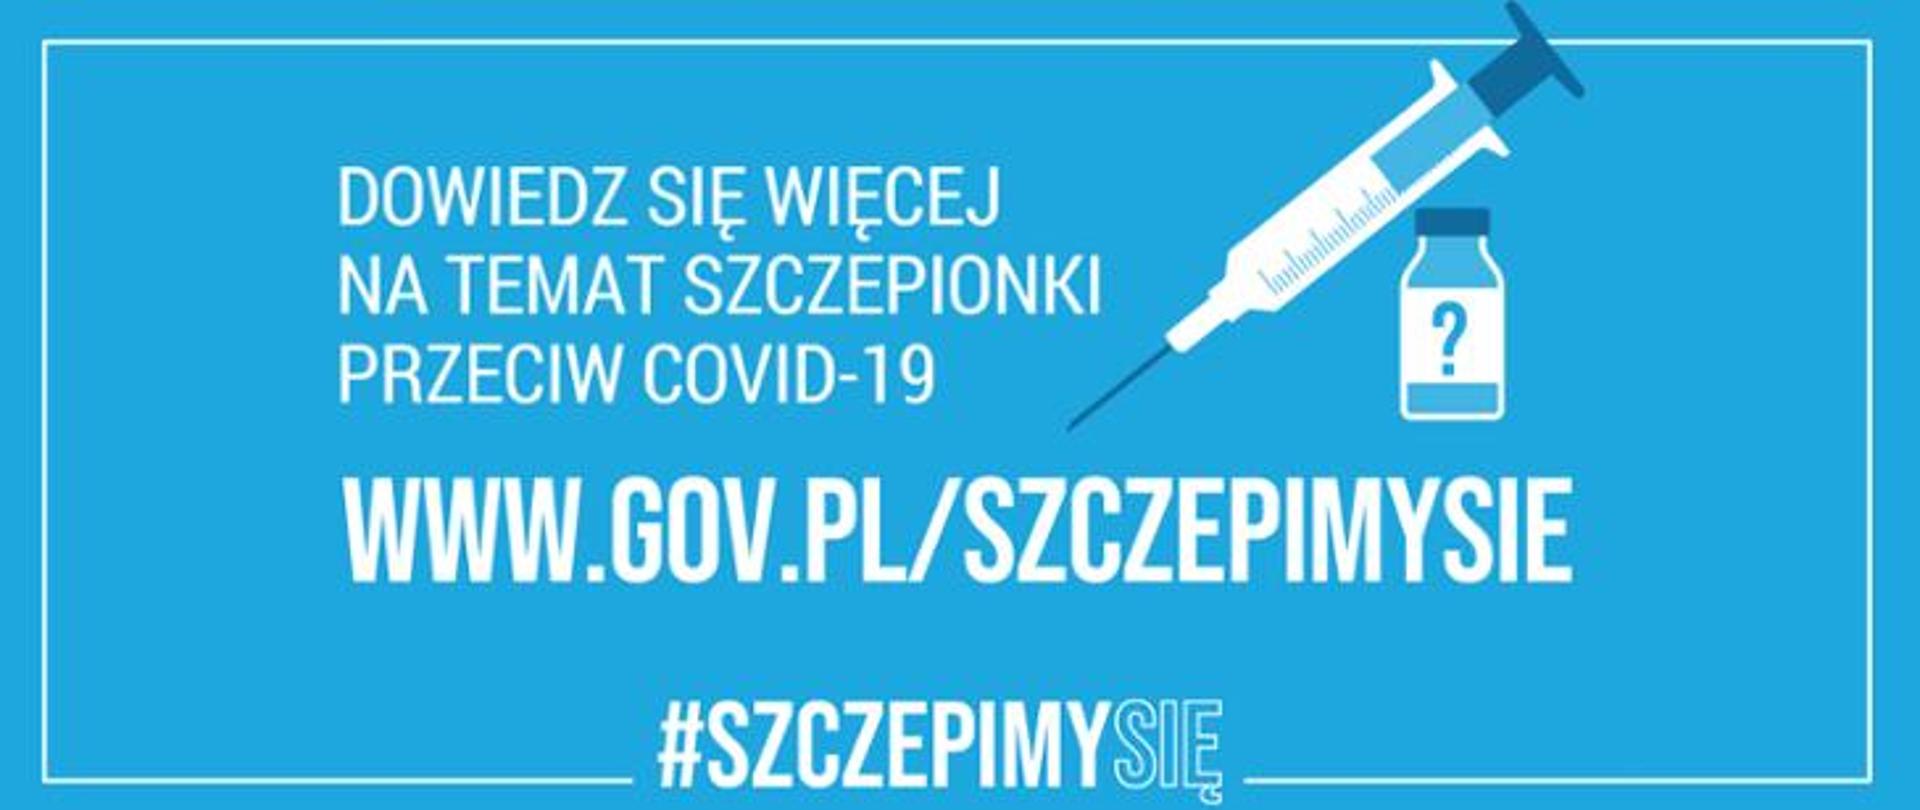 #SZCZEPIMYSIĘ - Informacje o szczepieniach i Narodowym Programie Szczepień przeciw COVID-19